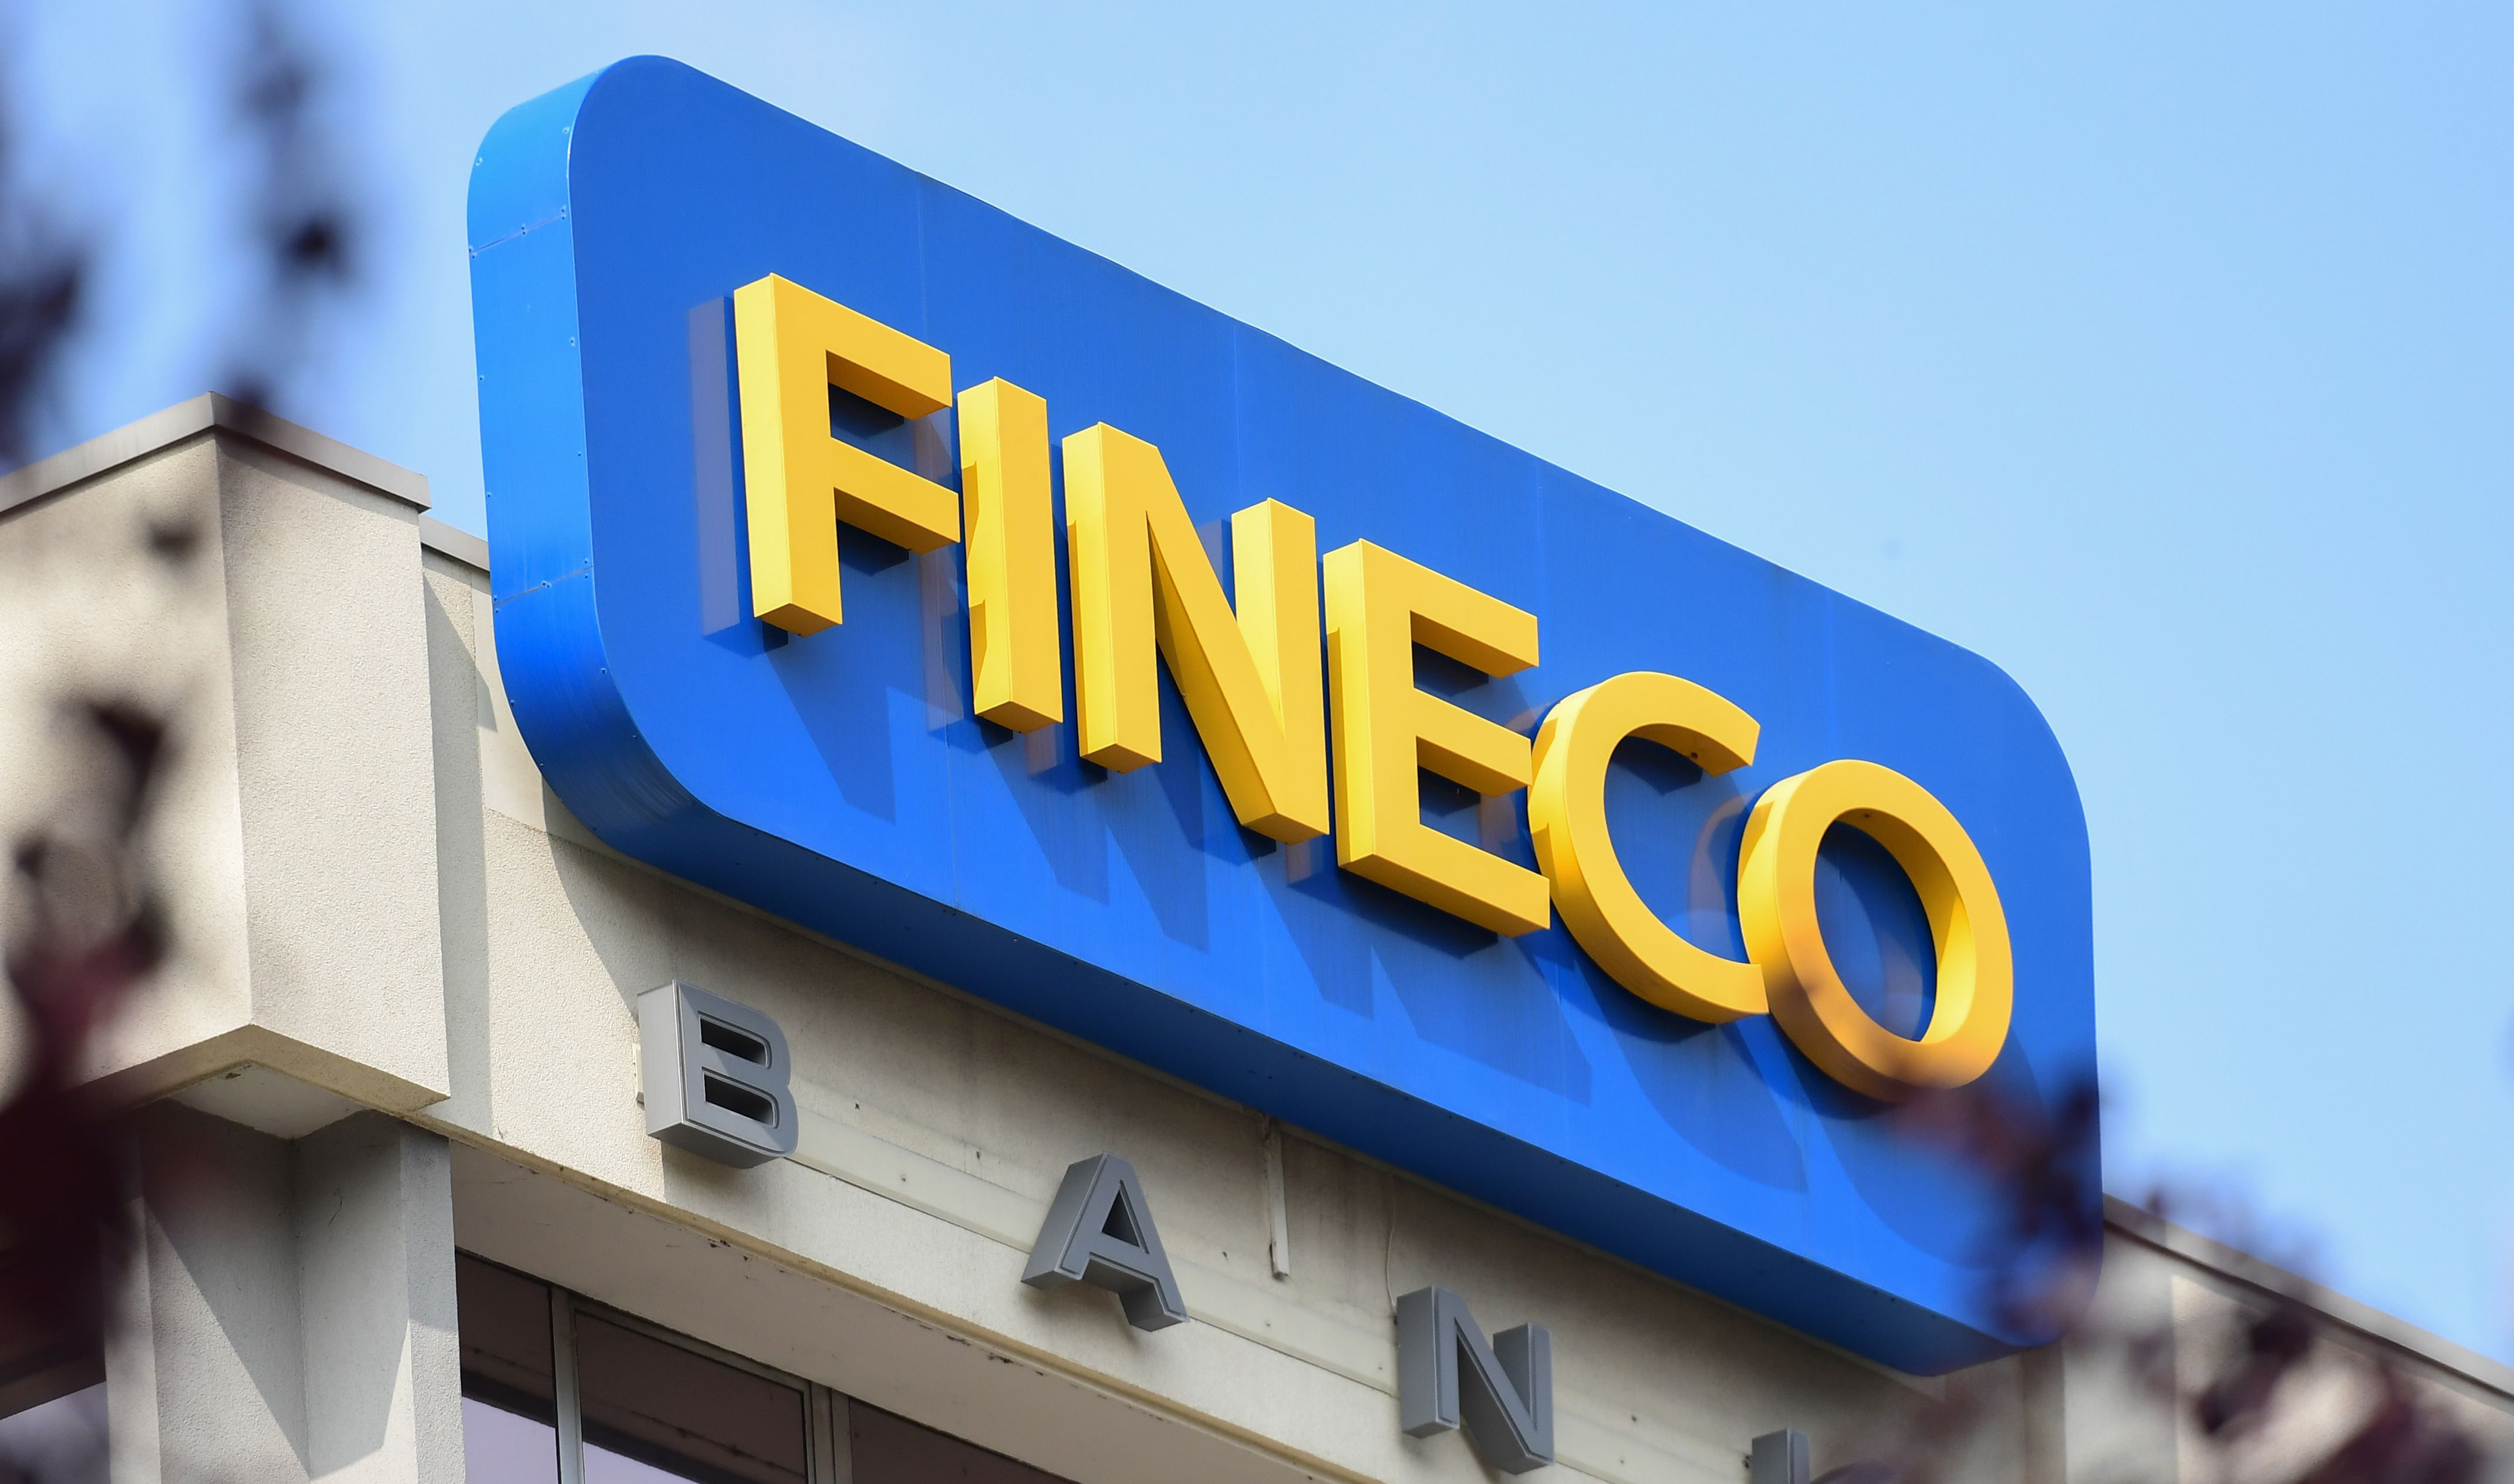 financialounge -  ETF Fineco Asset Management